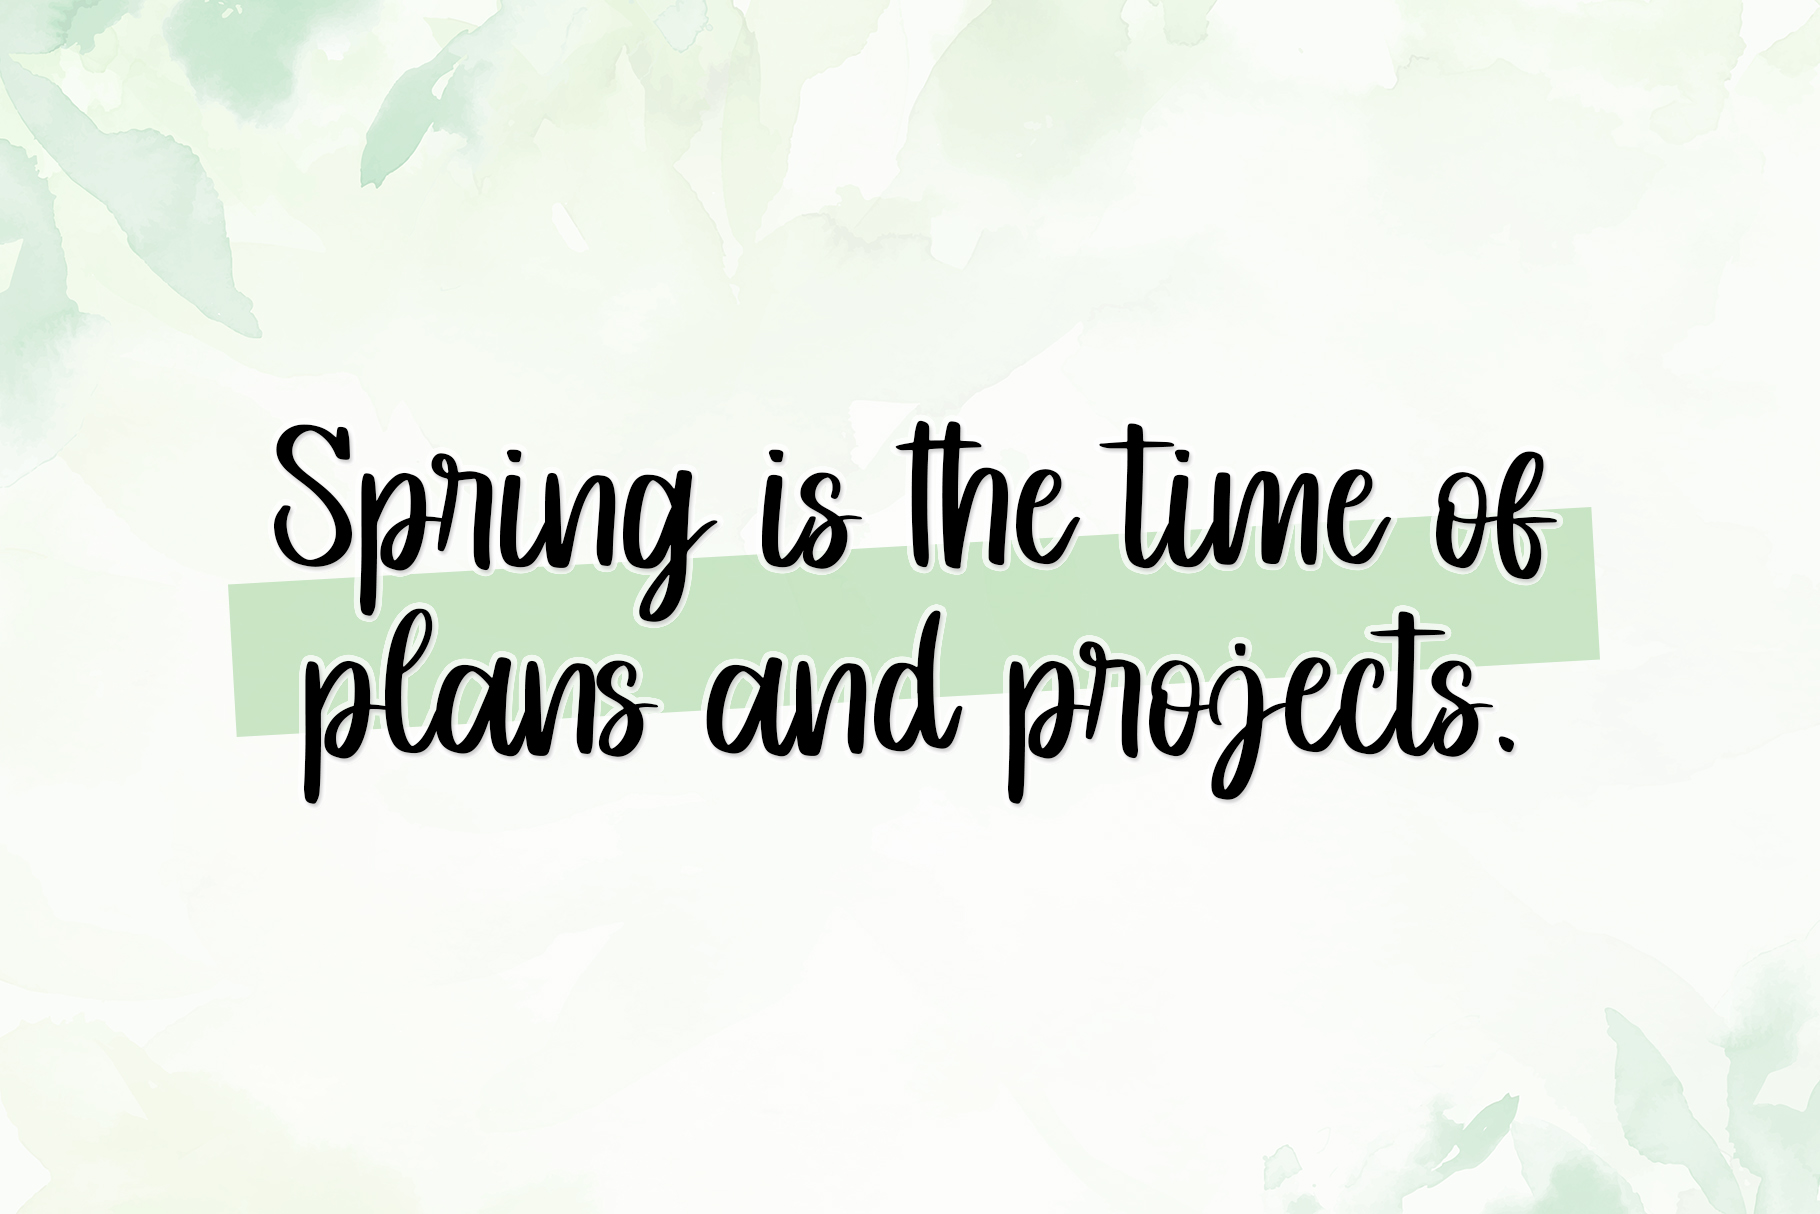 Springtime - Personal Use